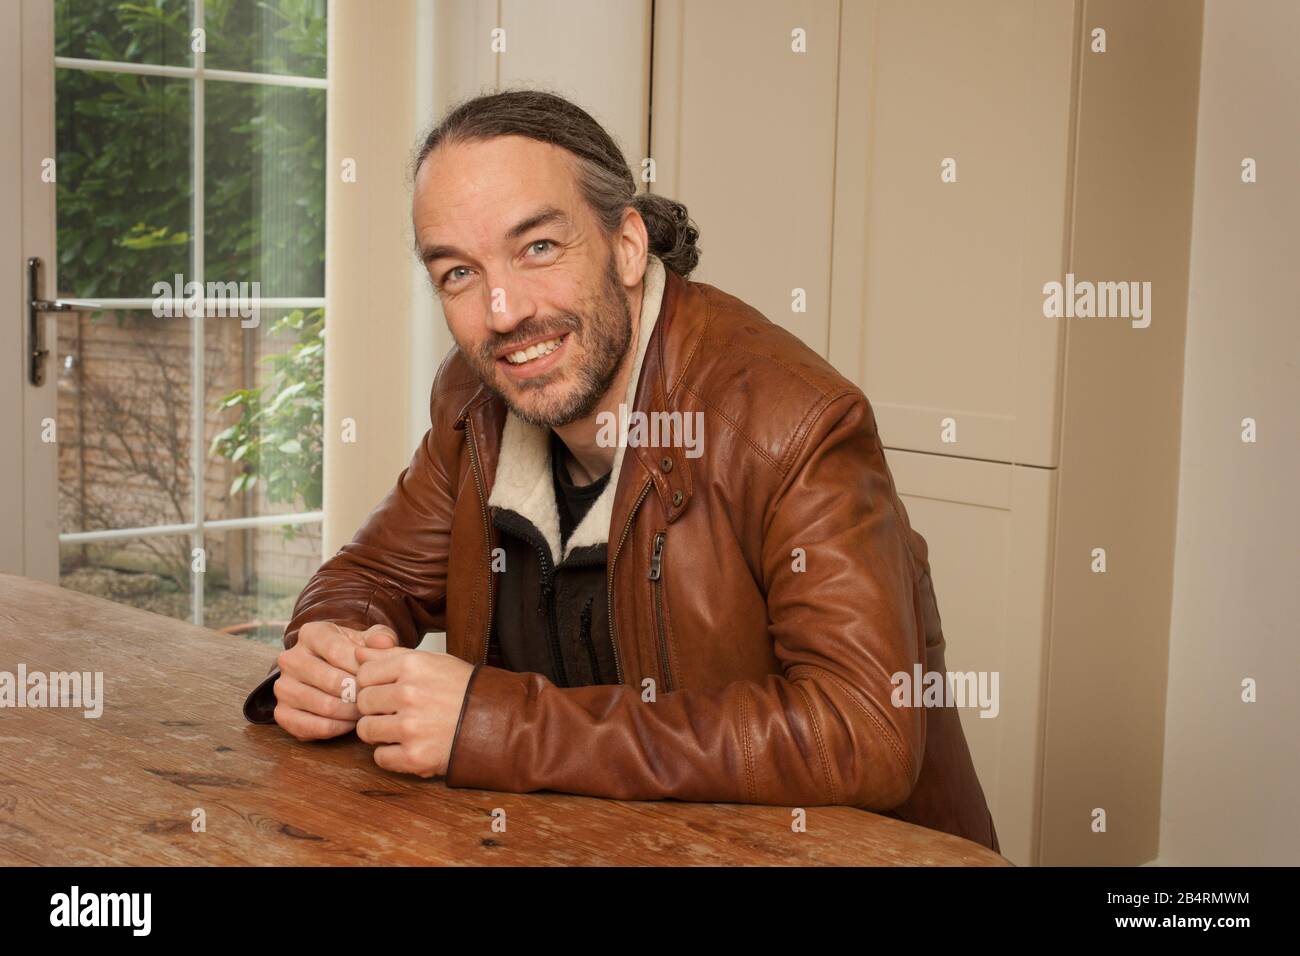 Un portrait d'un homme s'est assis à une table Banque D'Images